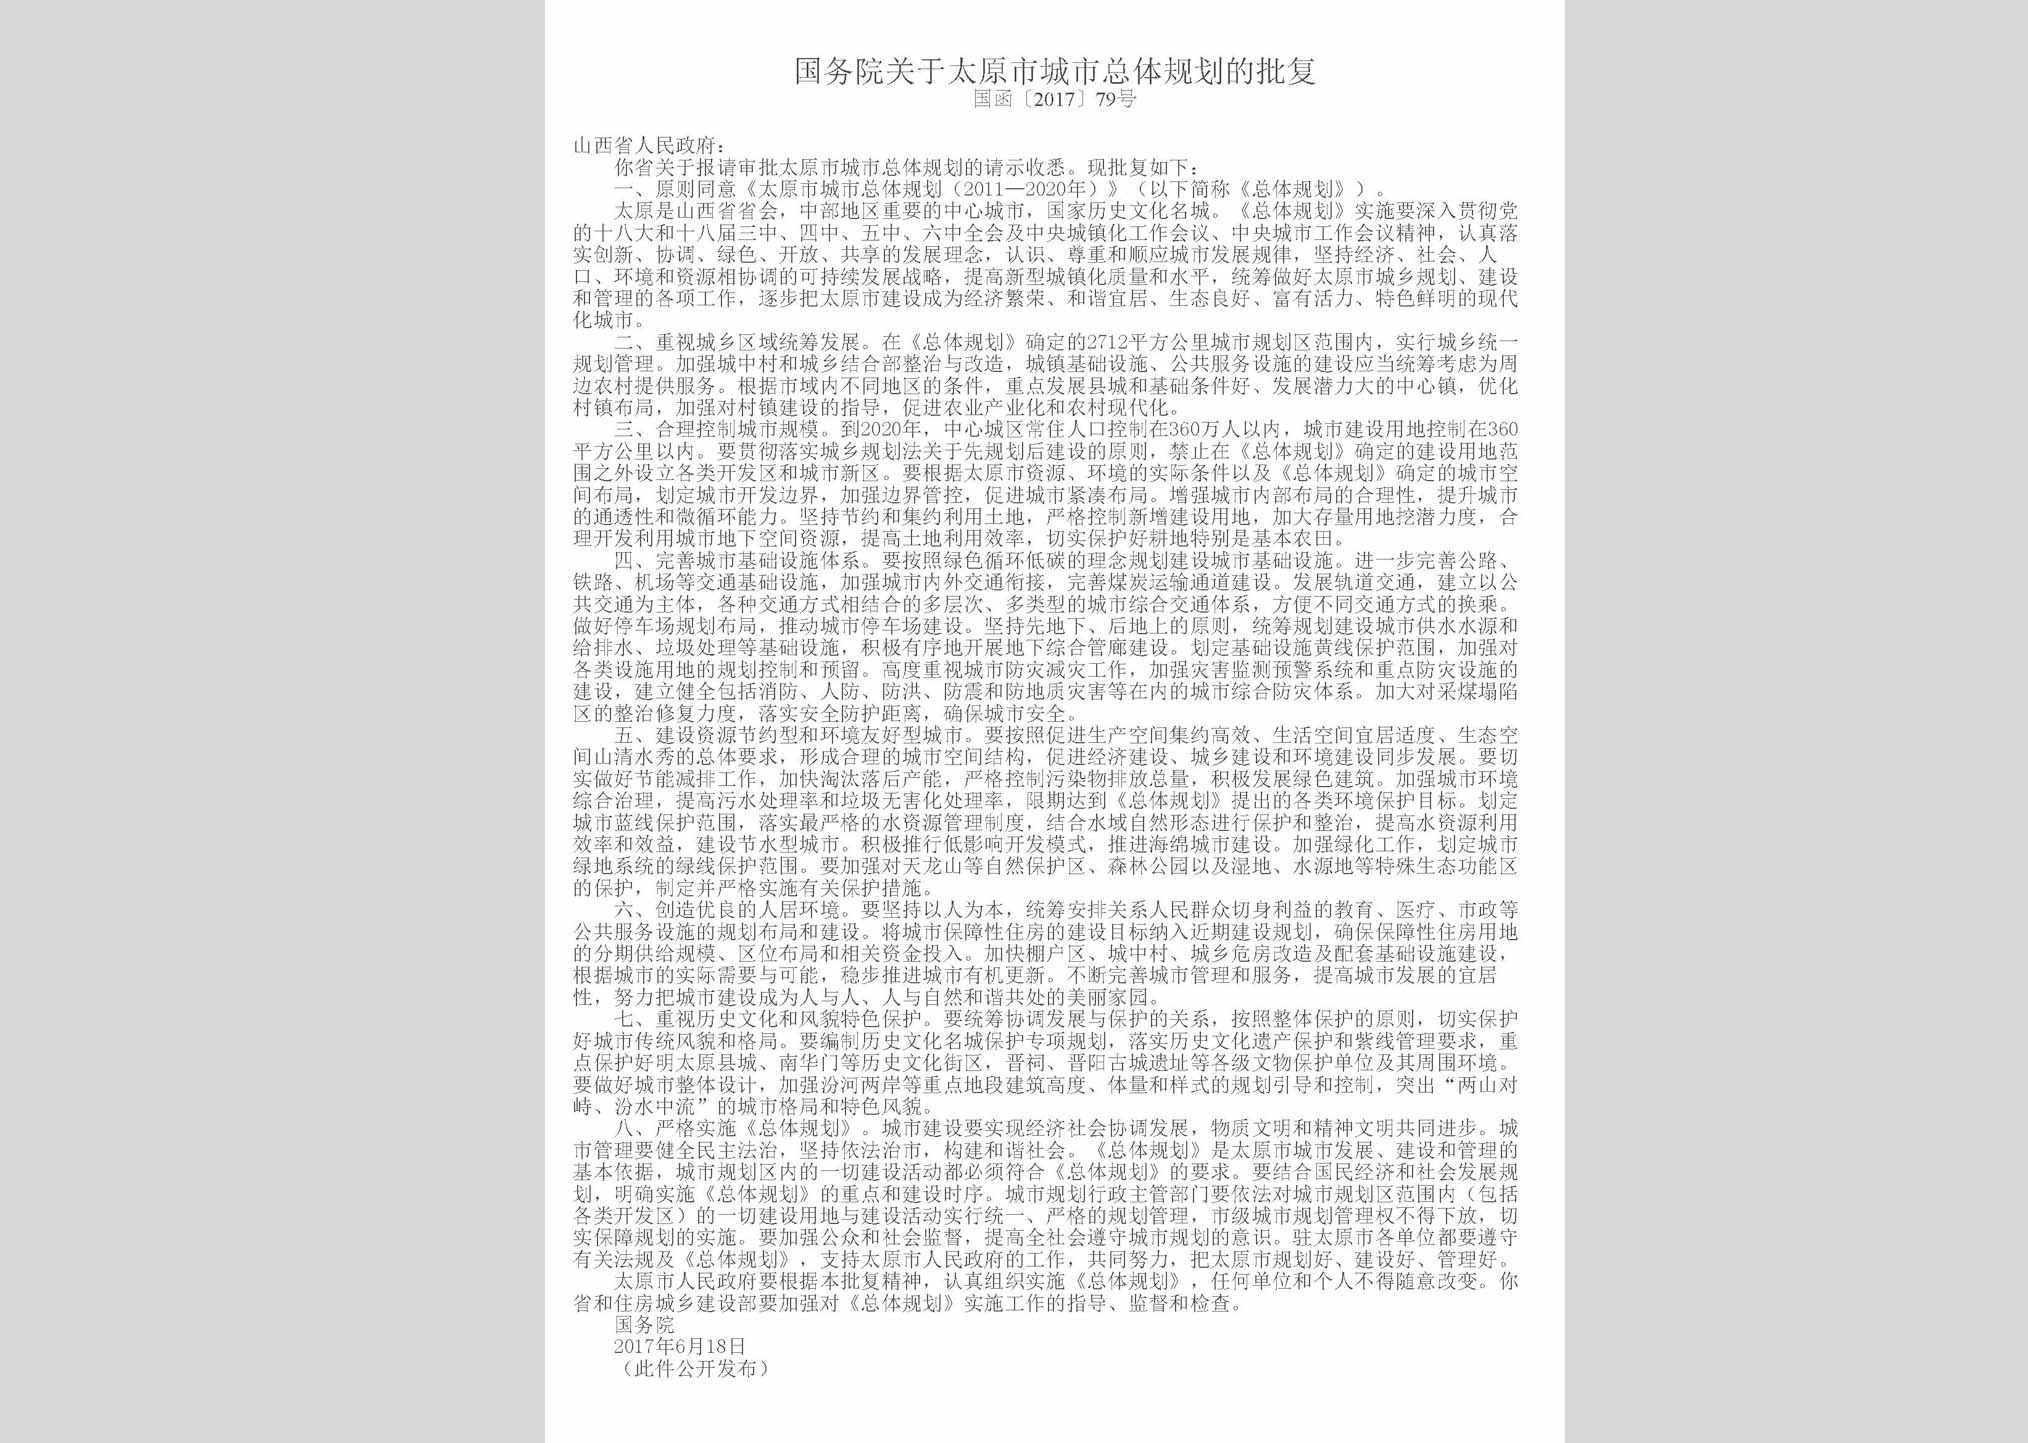 国函[2017]79号：国务院关于太原市城市总体规划的批复